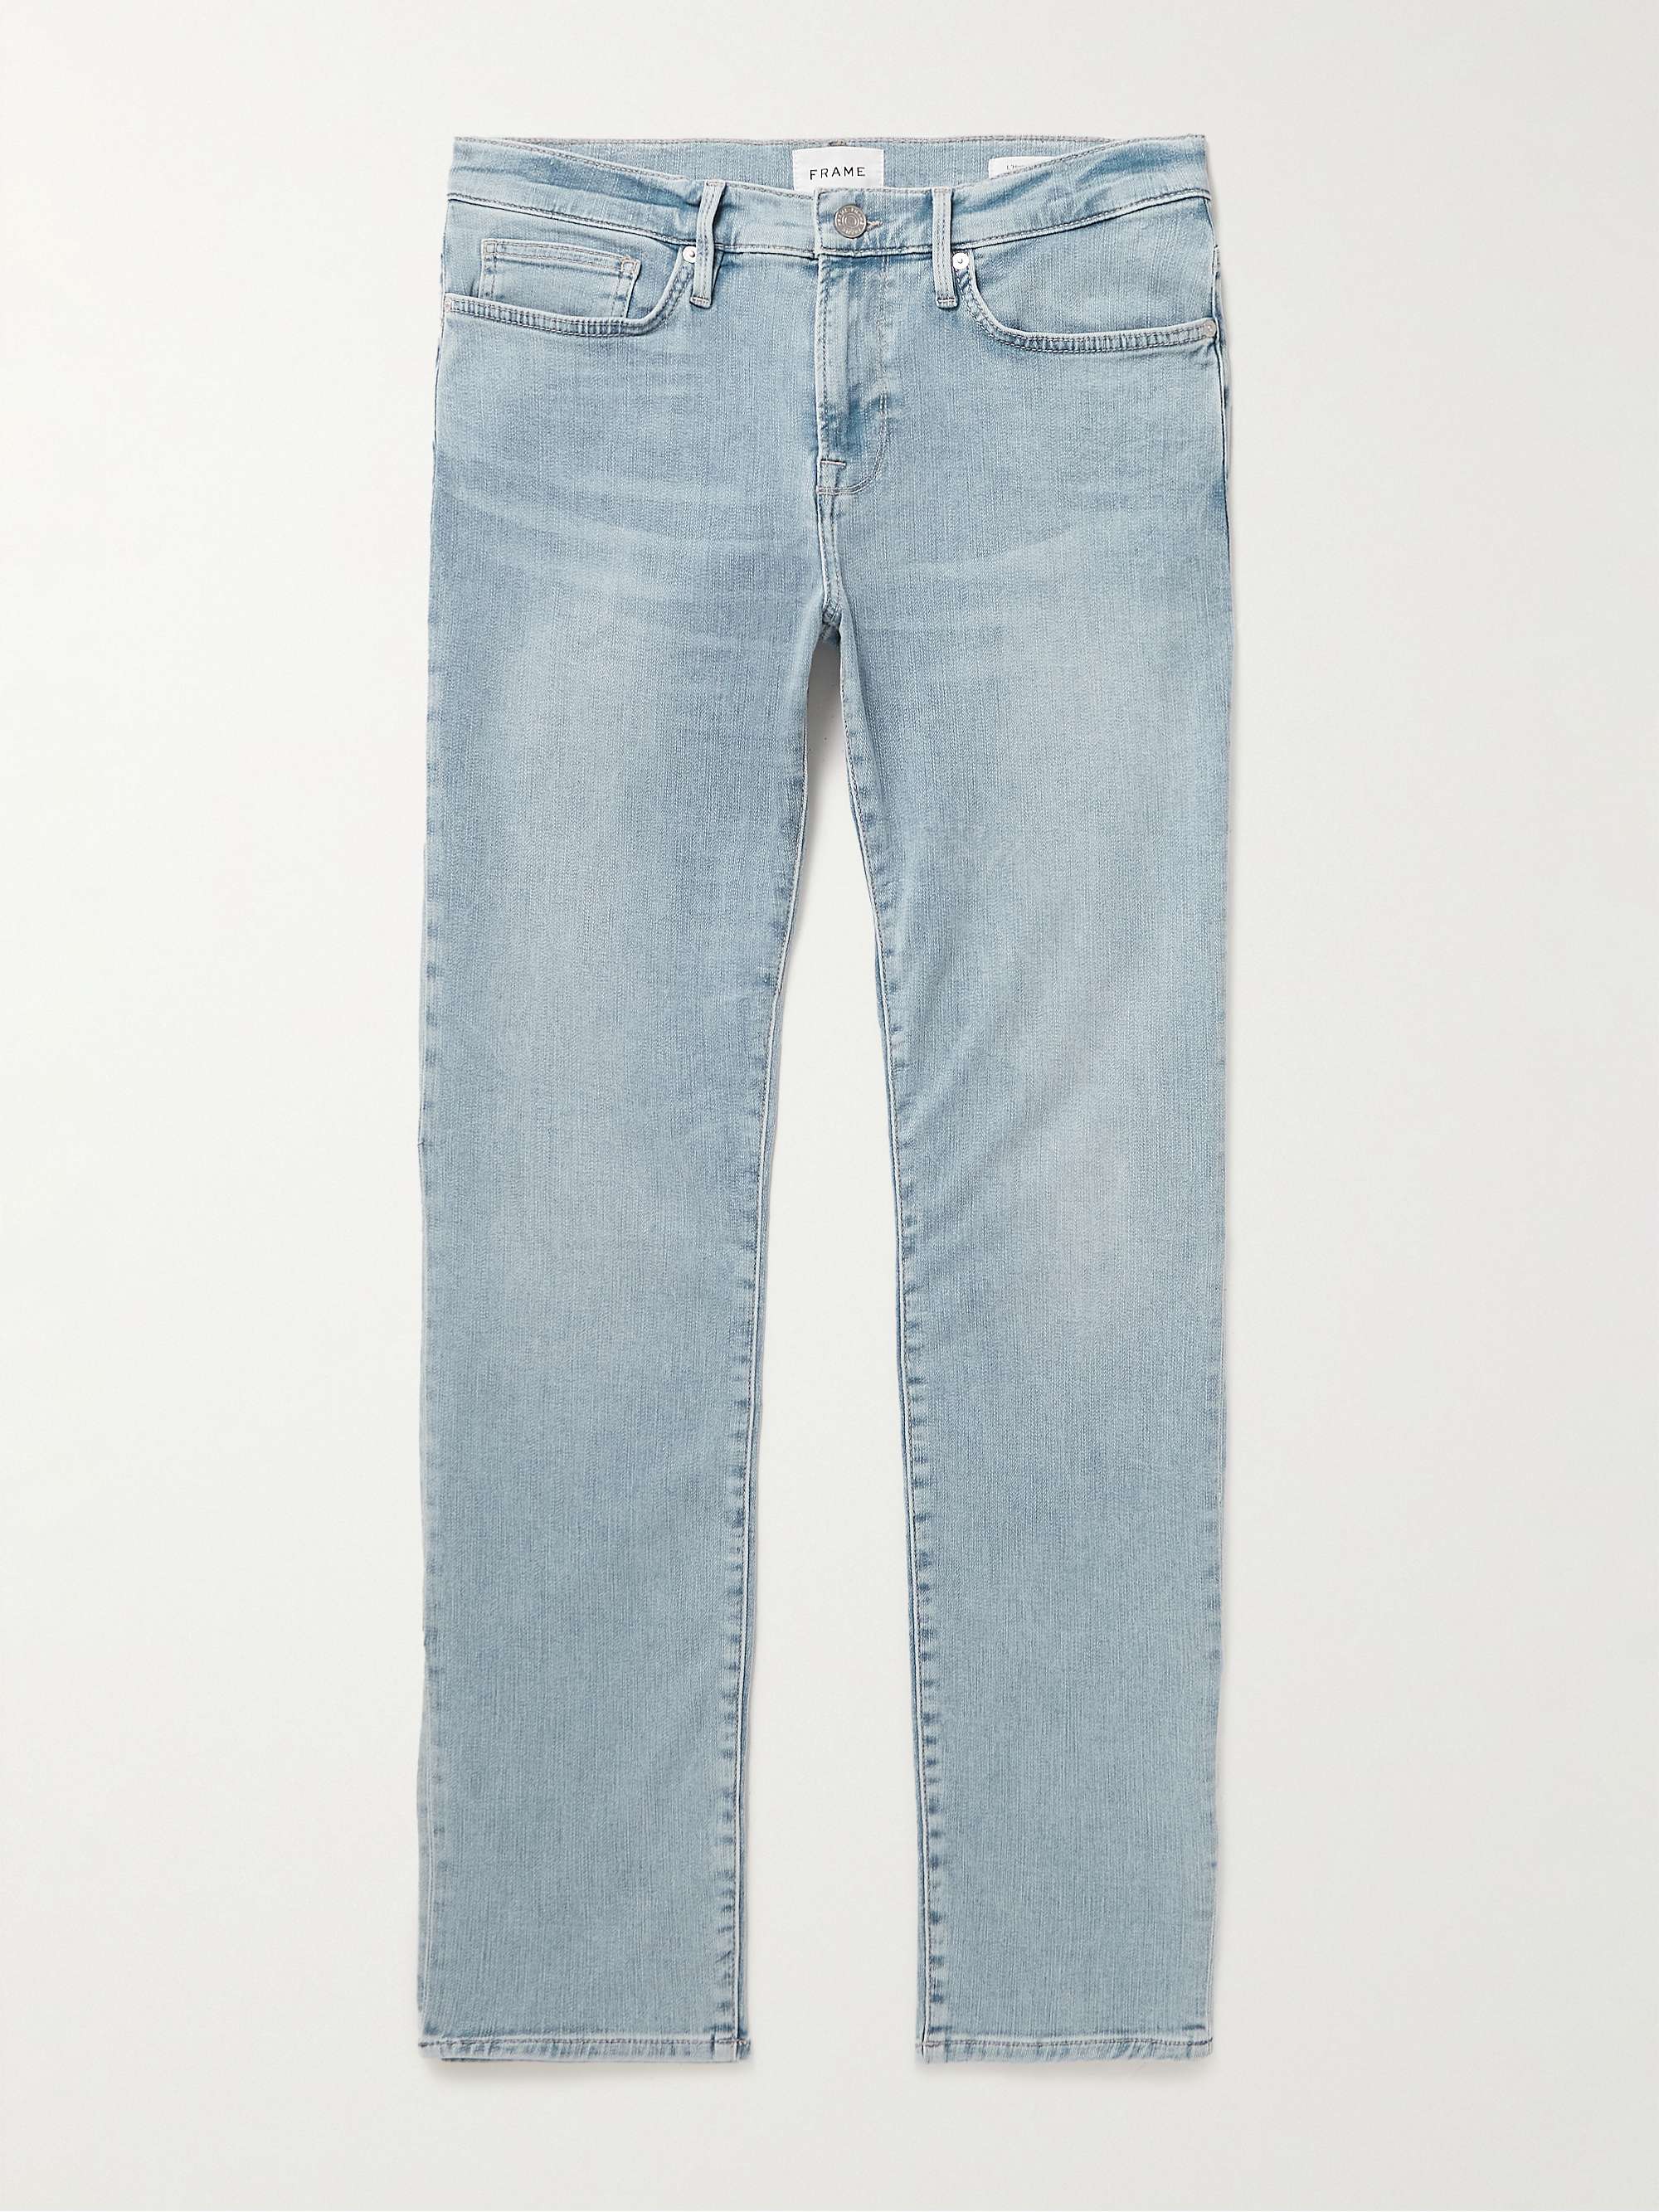 FRAME L'Homme Skinny-Fit Jeans | MR PORTER